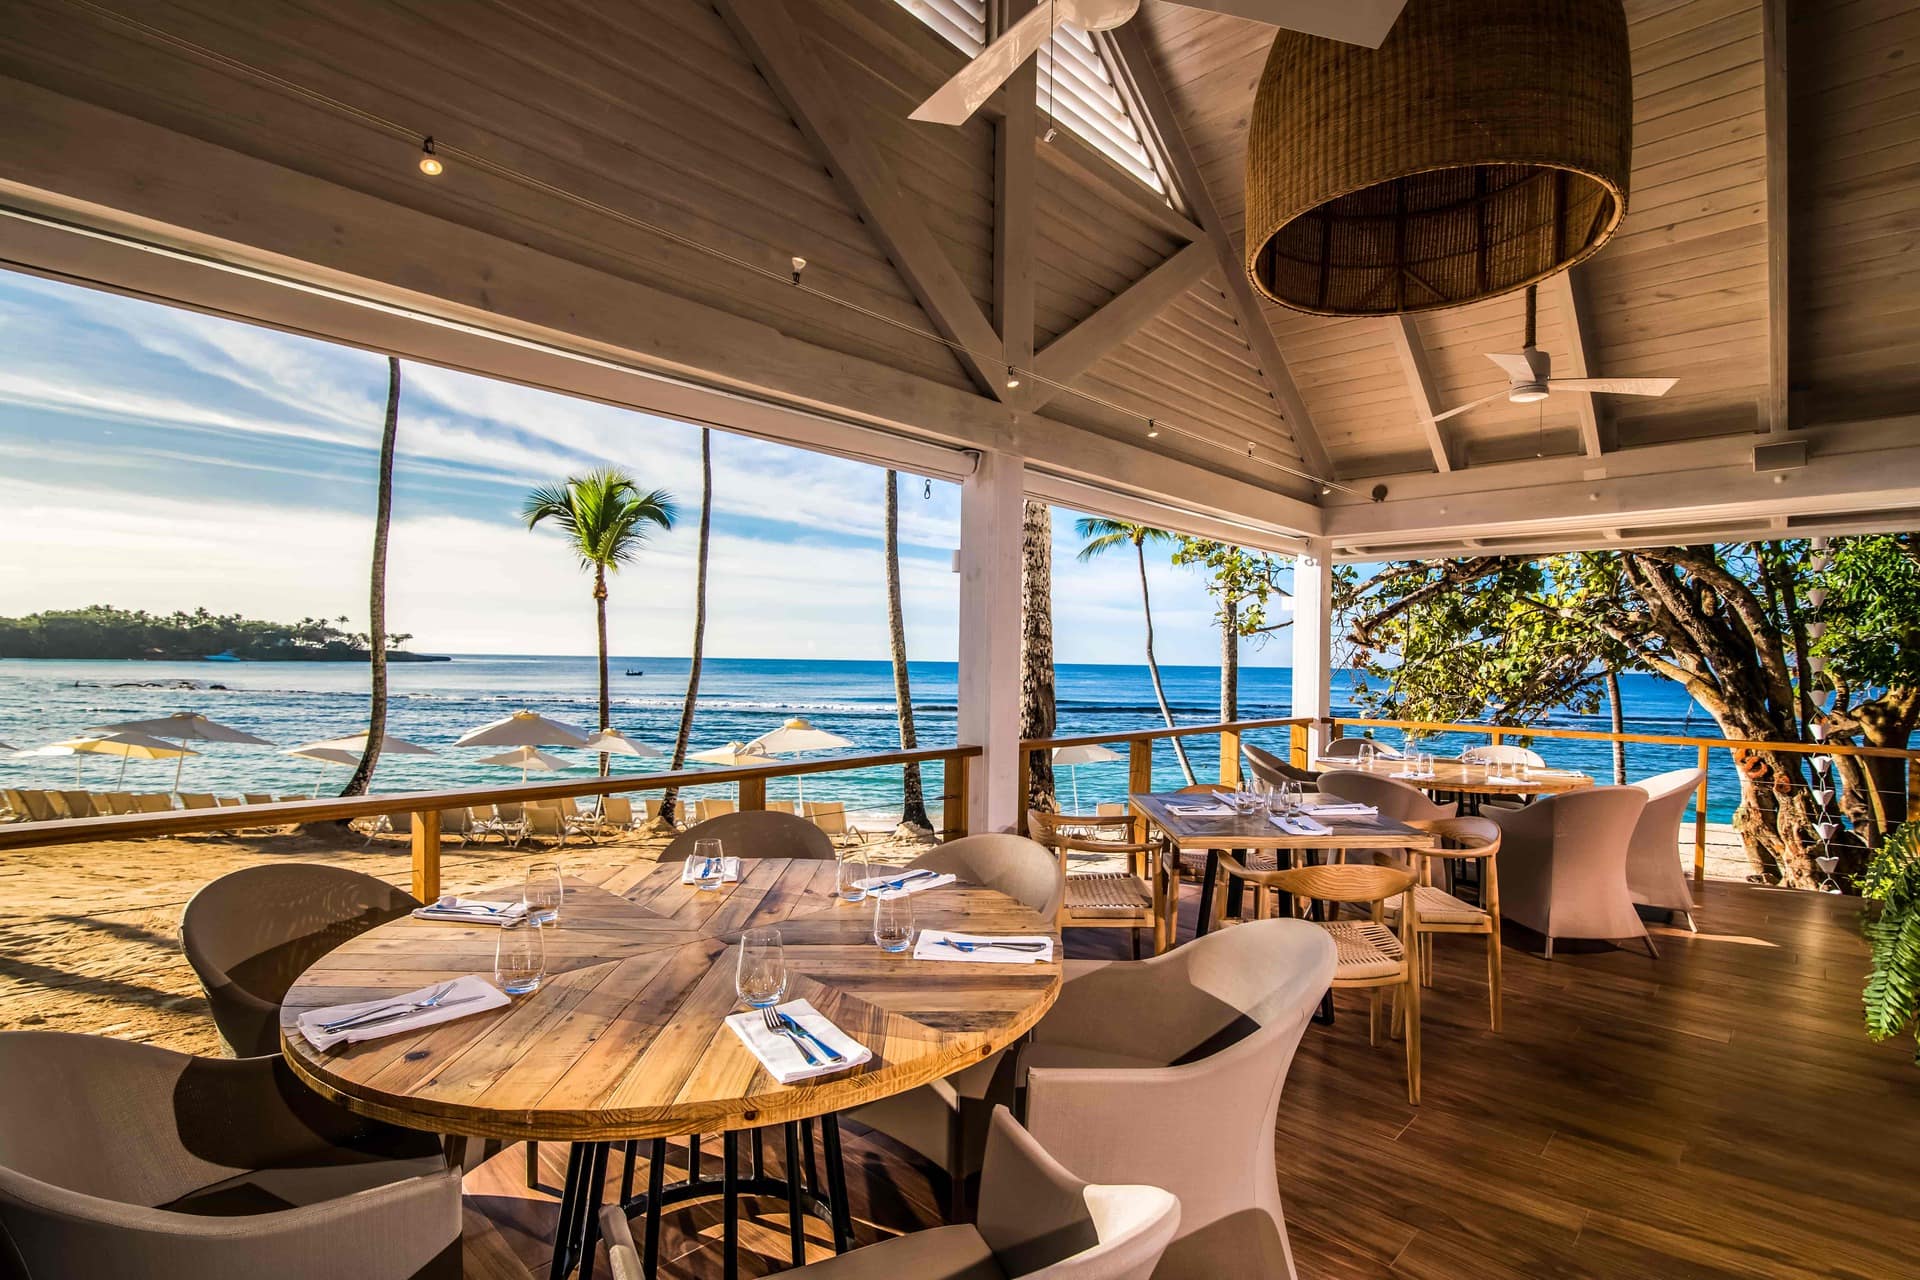 Minitas Beach Club Waterfront Dining at Casa de Campo Resort & Villas in the Dominican Republic